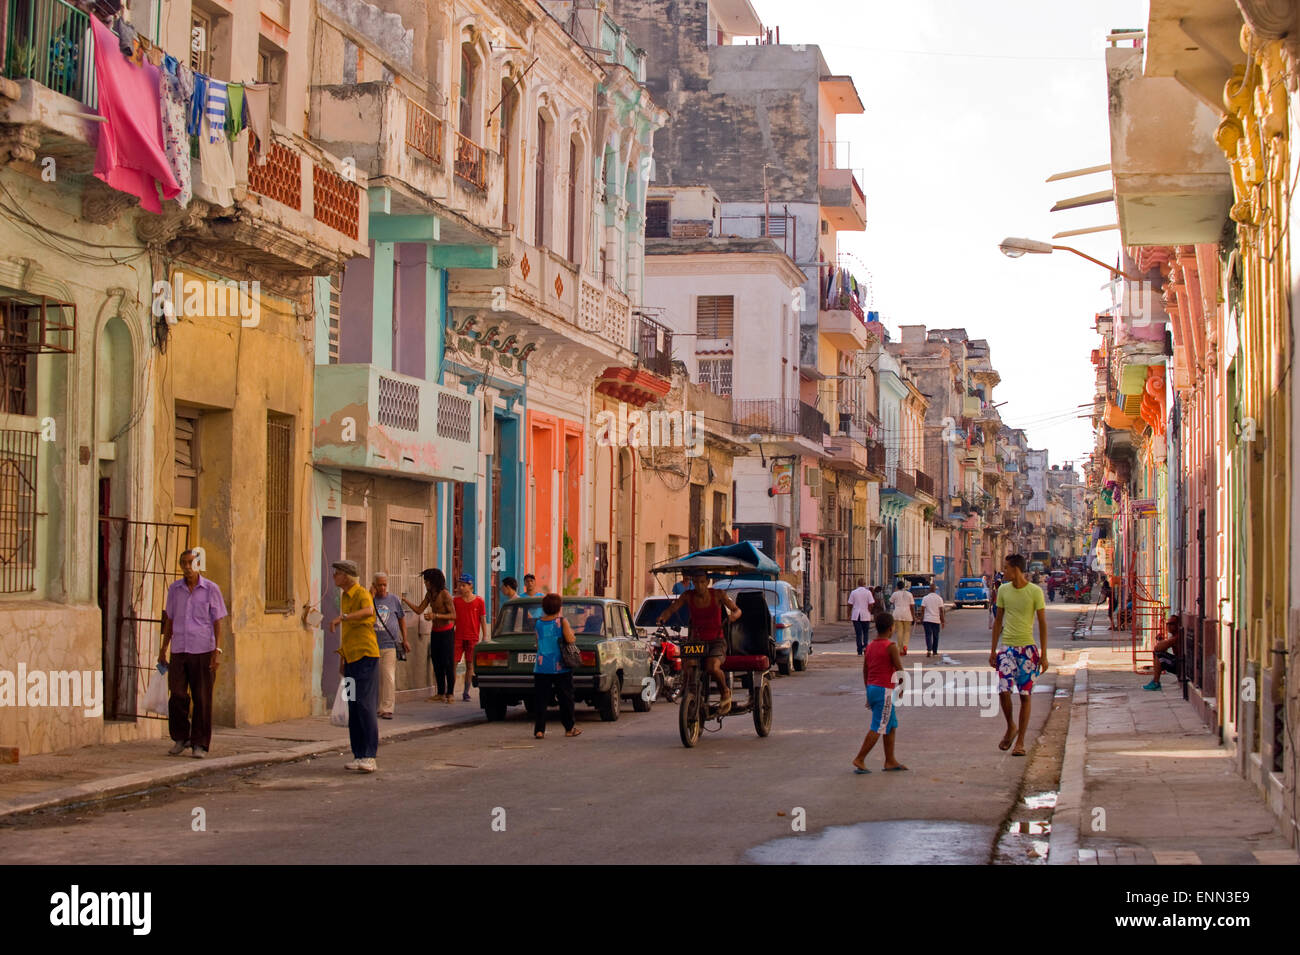 A street in Havana, Cuba Stock Photo